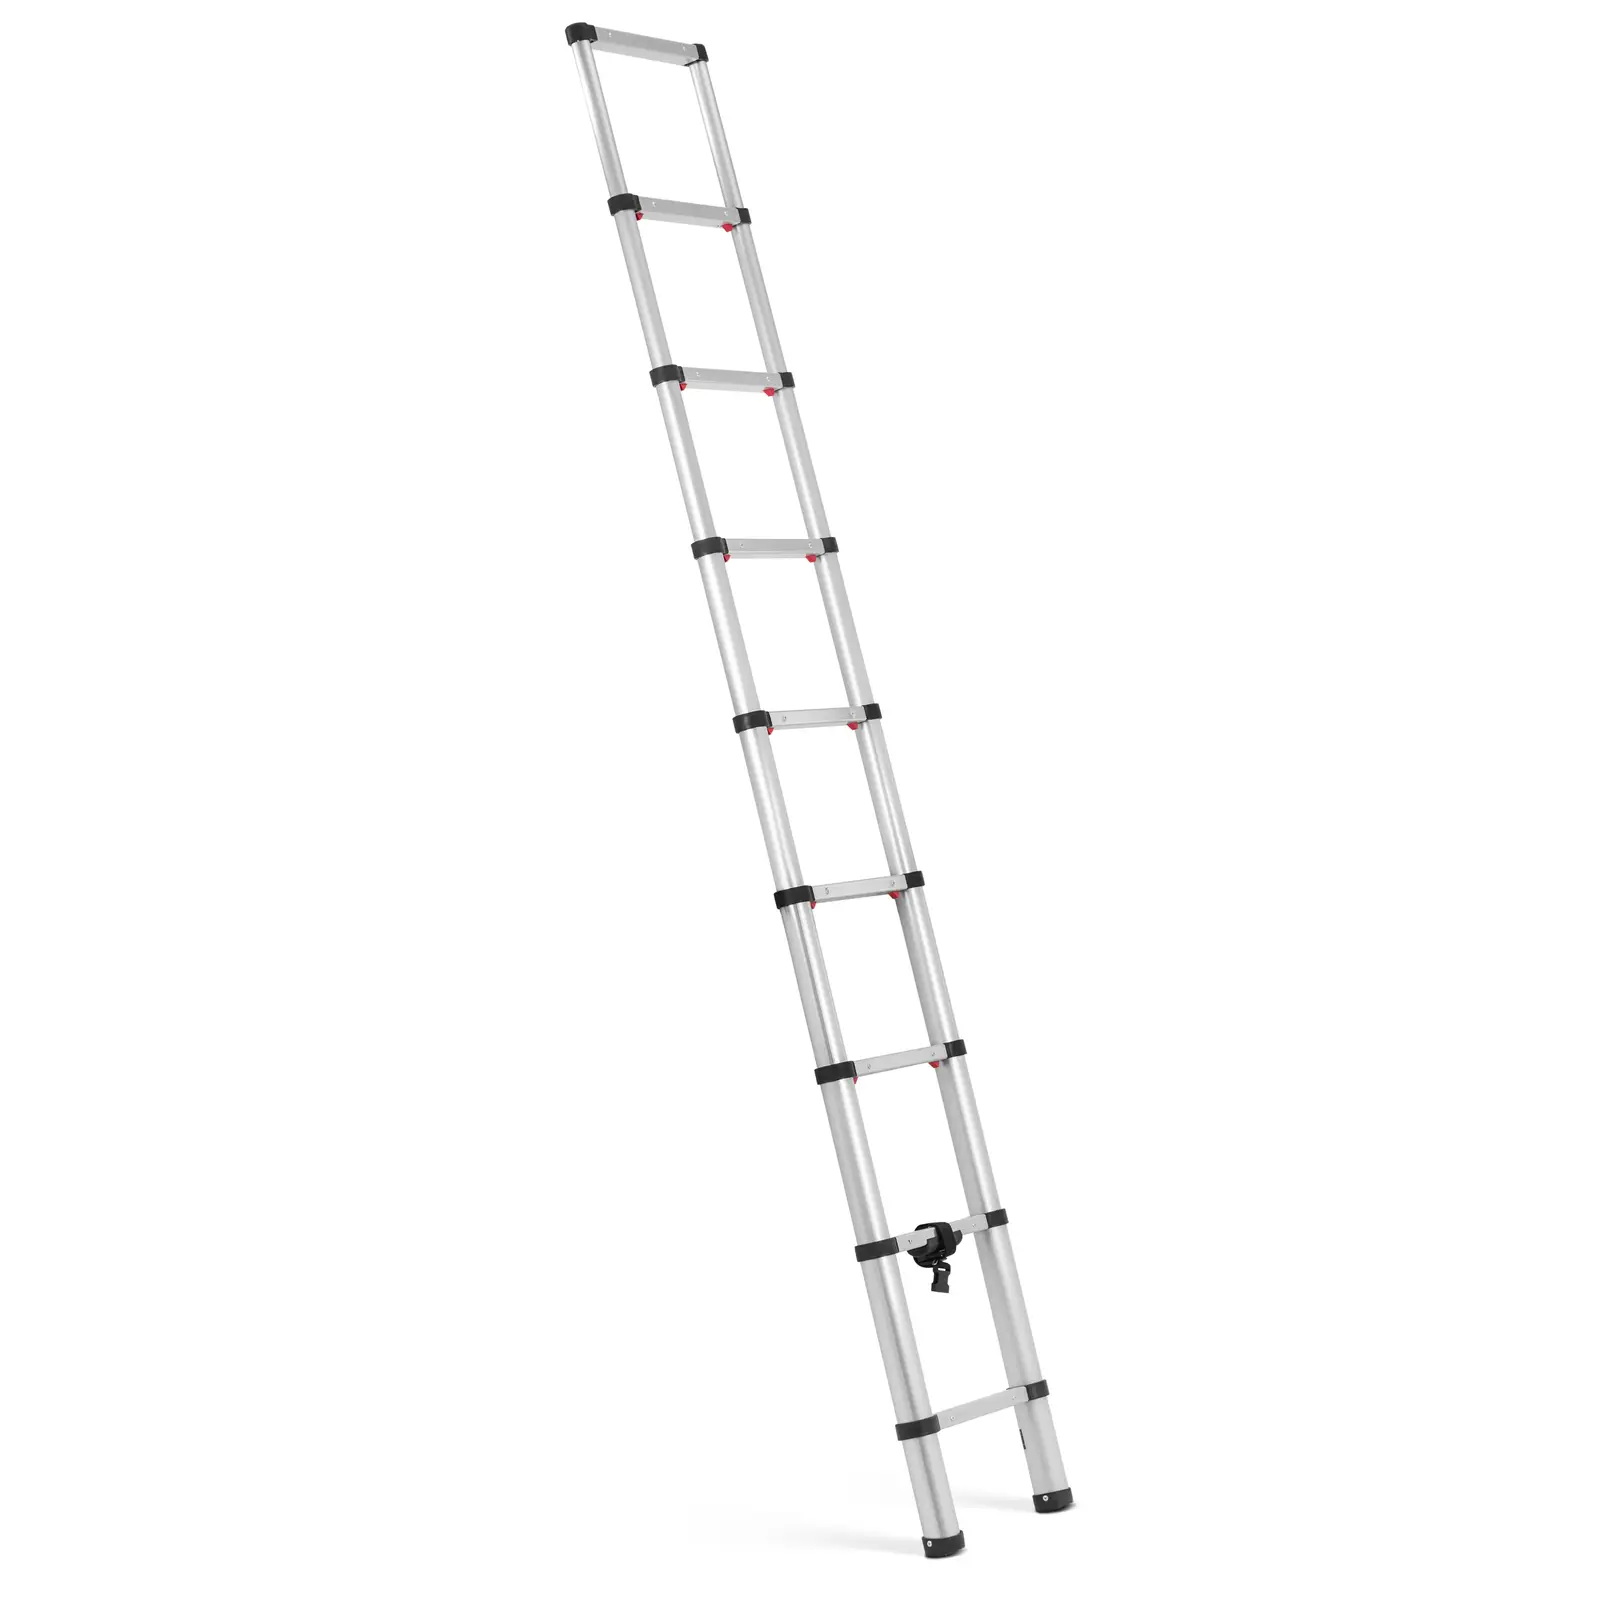 Escada telescópica - 8 degraus - Alumínio - Altura: 0,75 - 2,60 m